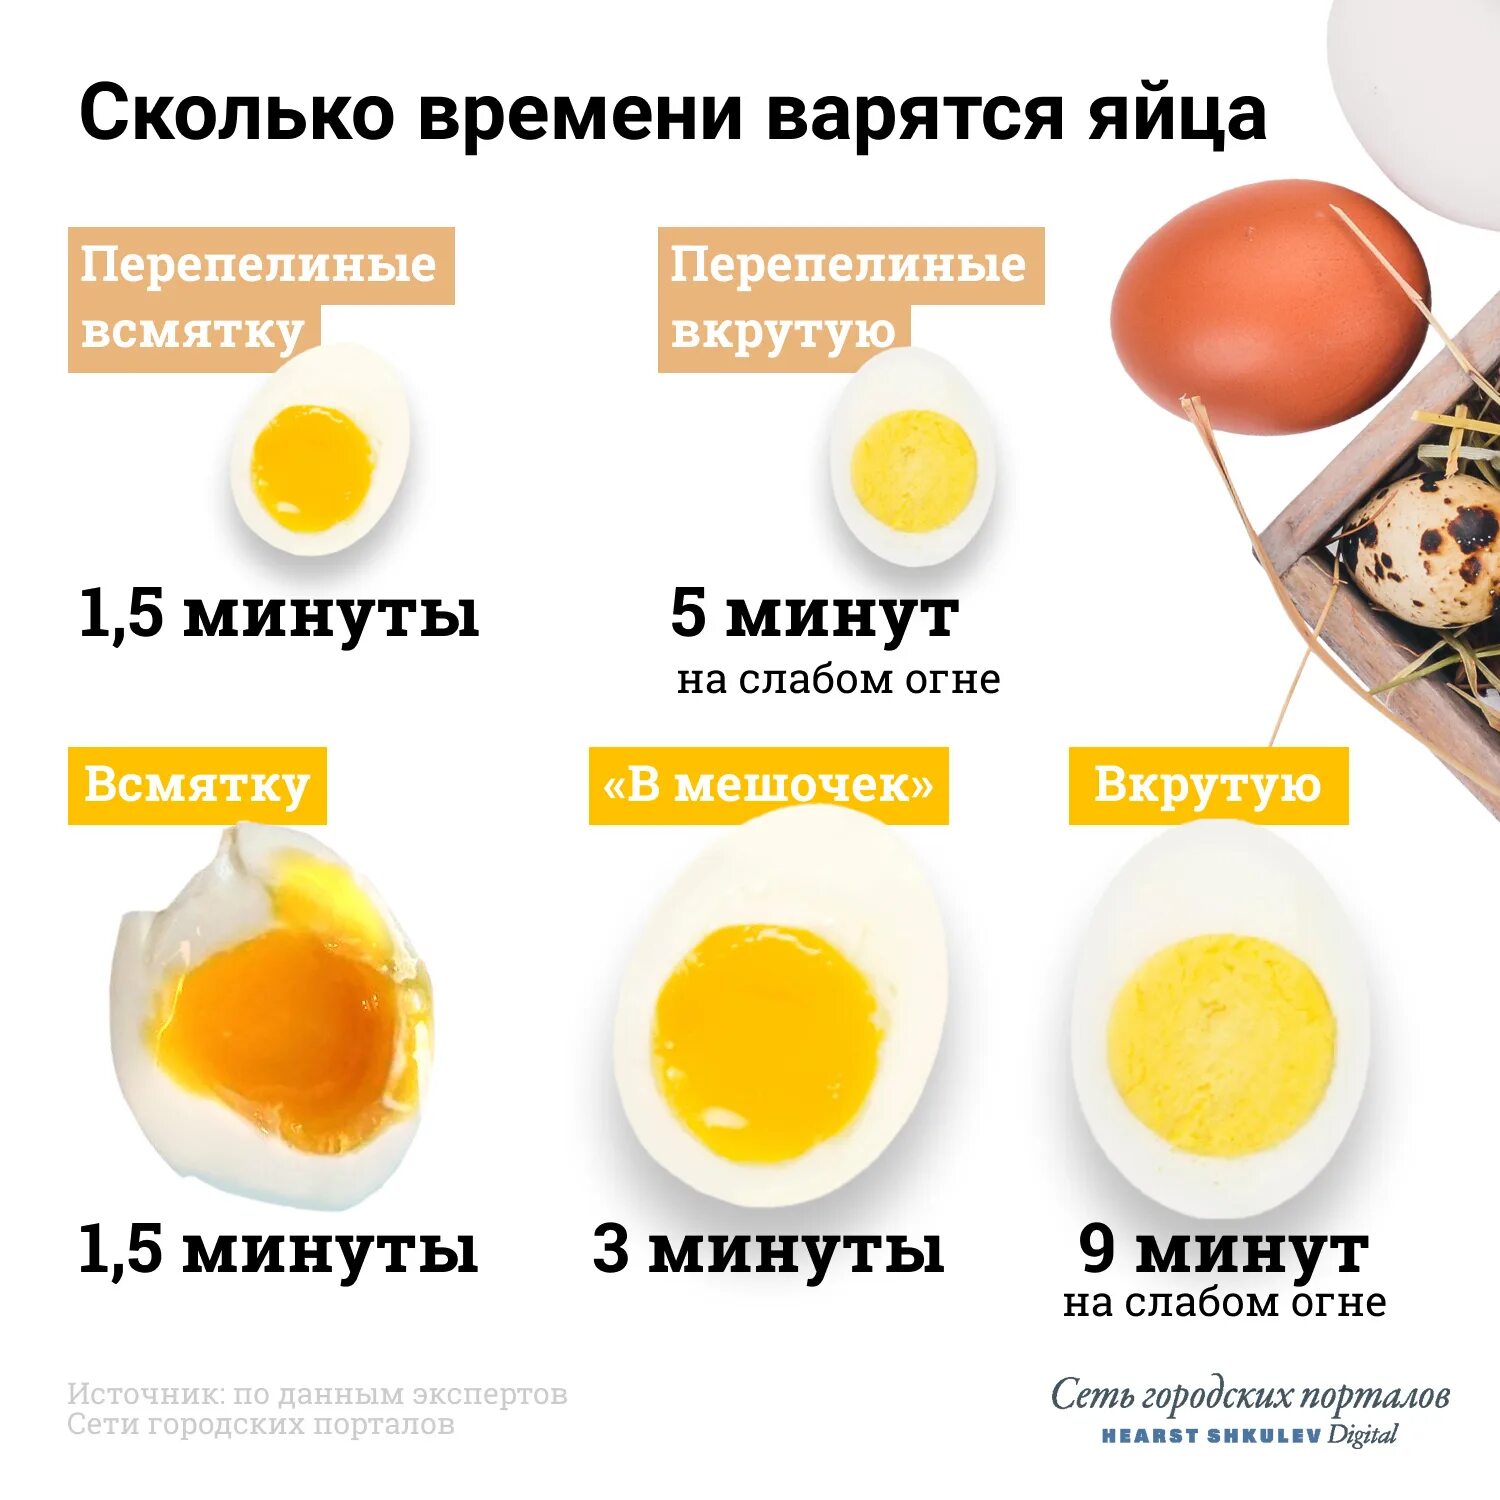 Сварятся ли яйца. Яйцо всмятку яйца вкрутую. Яйца всмятку в мешочек и вкрутую. Сколько варить яйца. Сколько варить яйца всмятку.